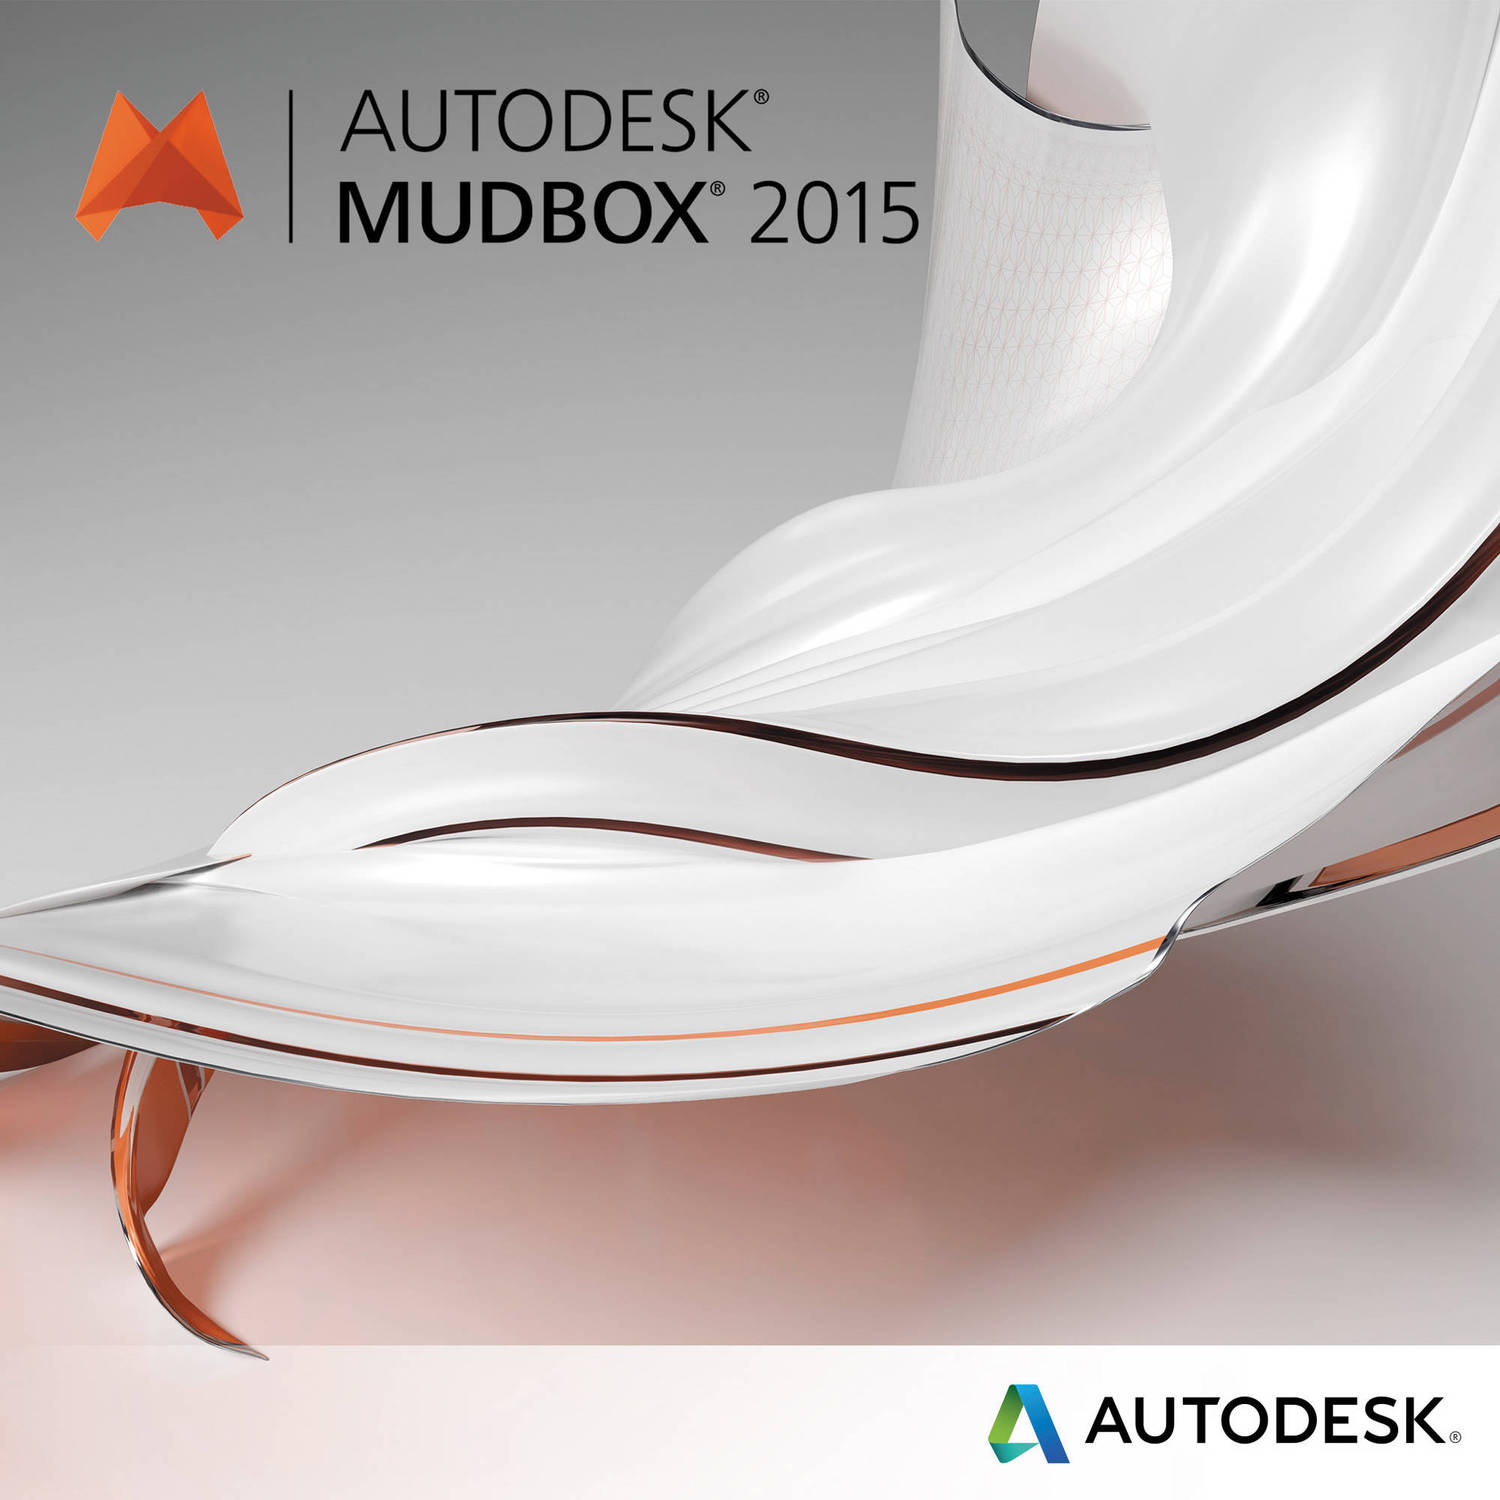 Autodesk Mudbox 2015 cheap license